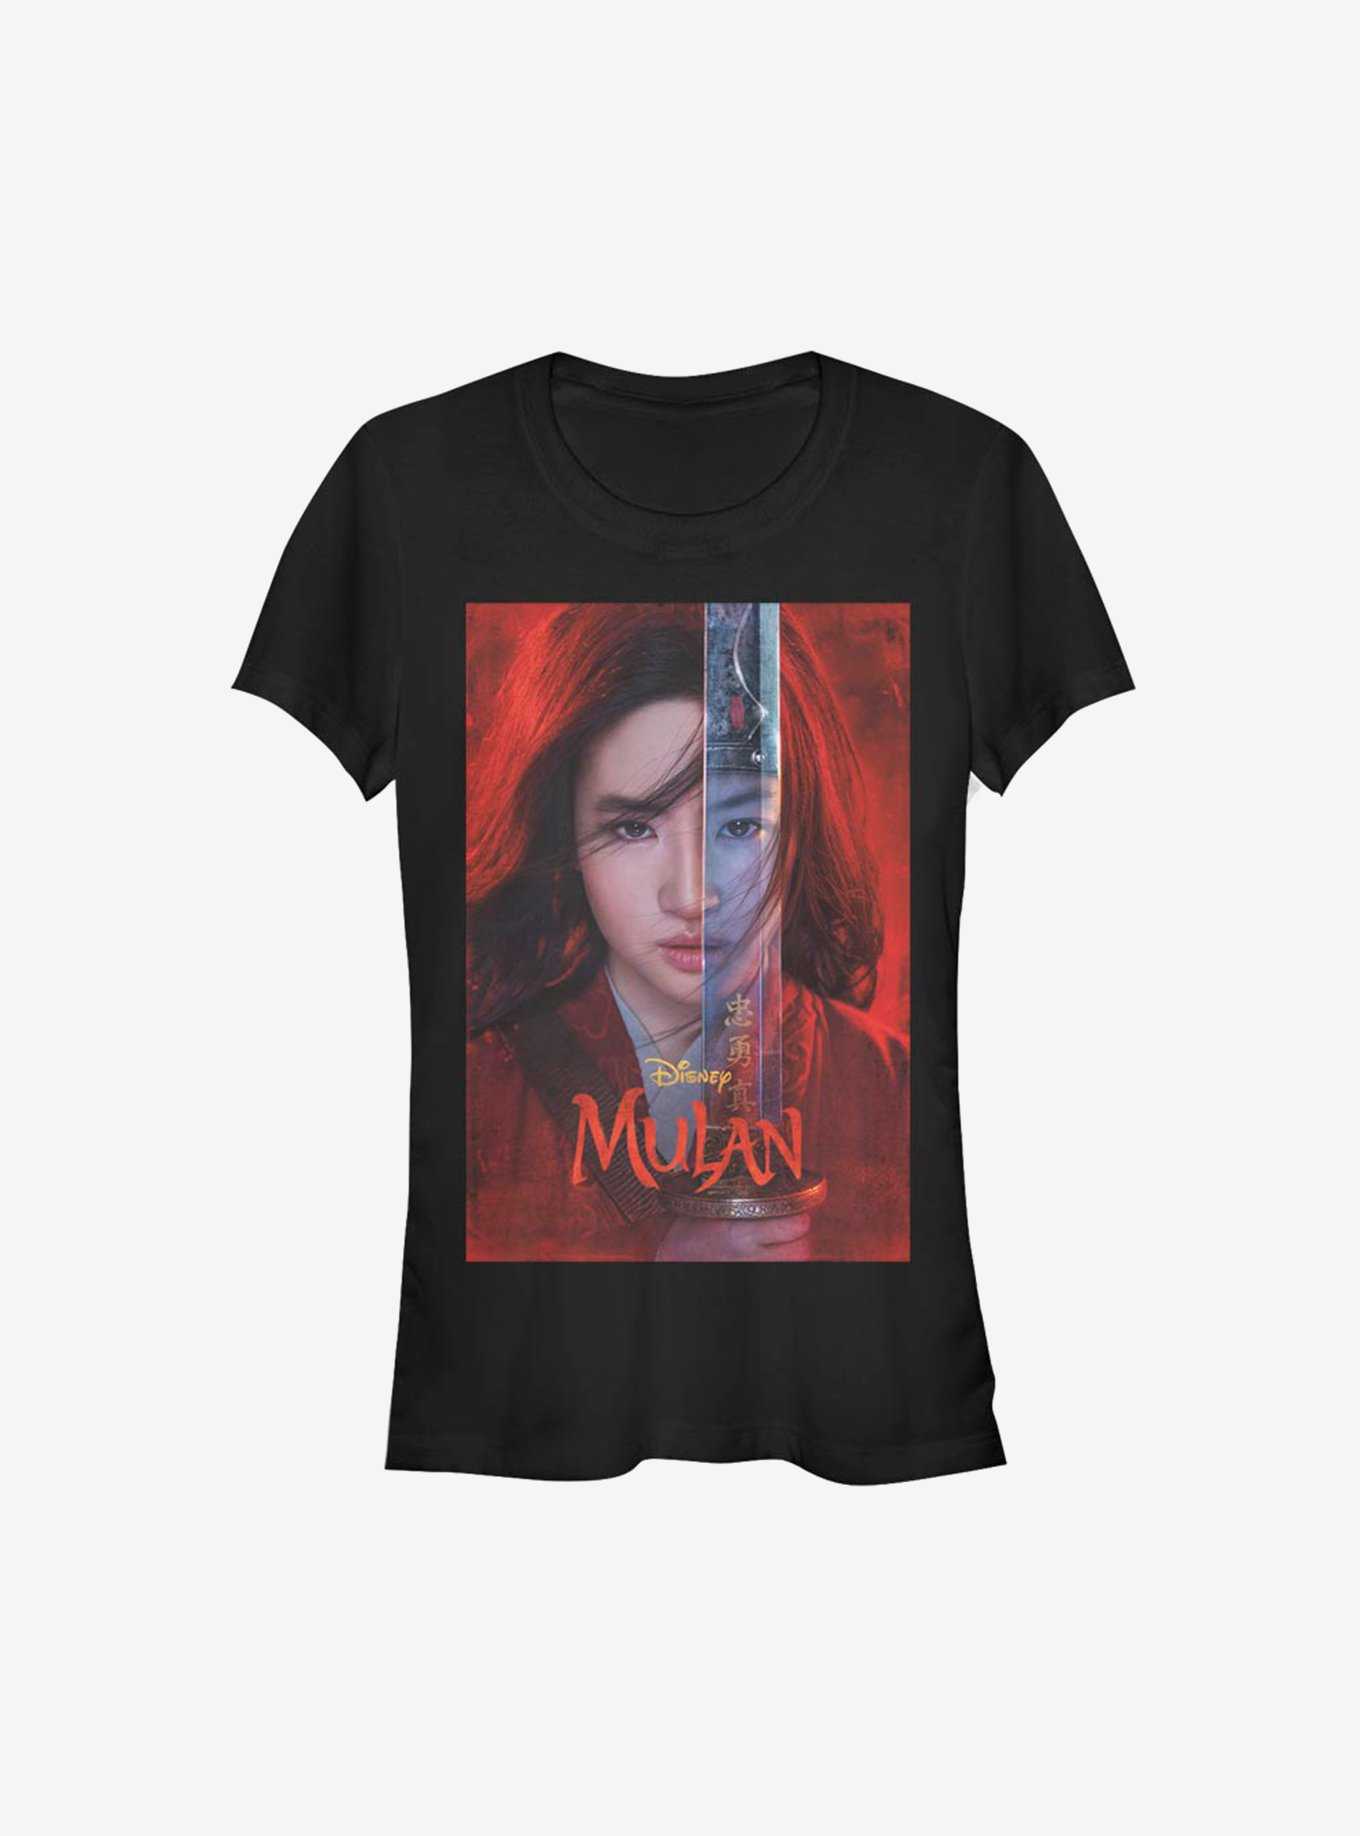 Disney Mulan Live Action Movie Poster Girls T-Shirt, , hi-res